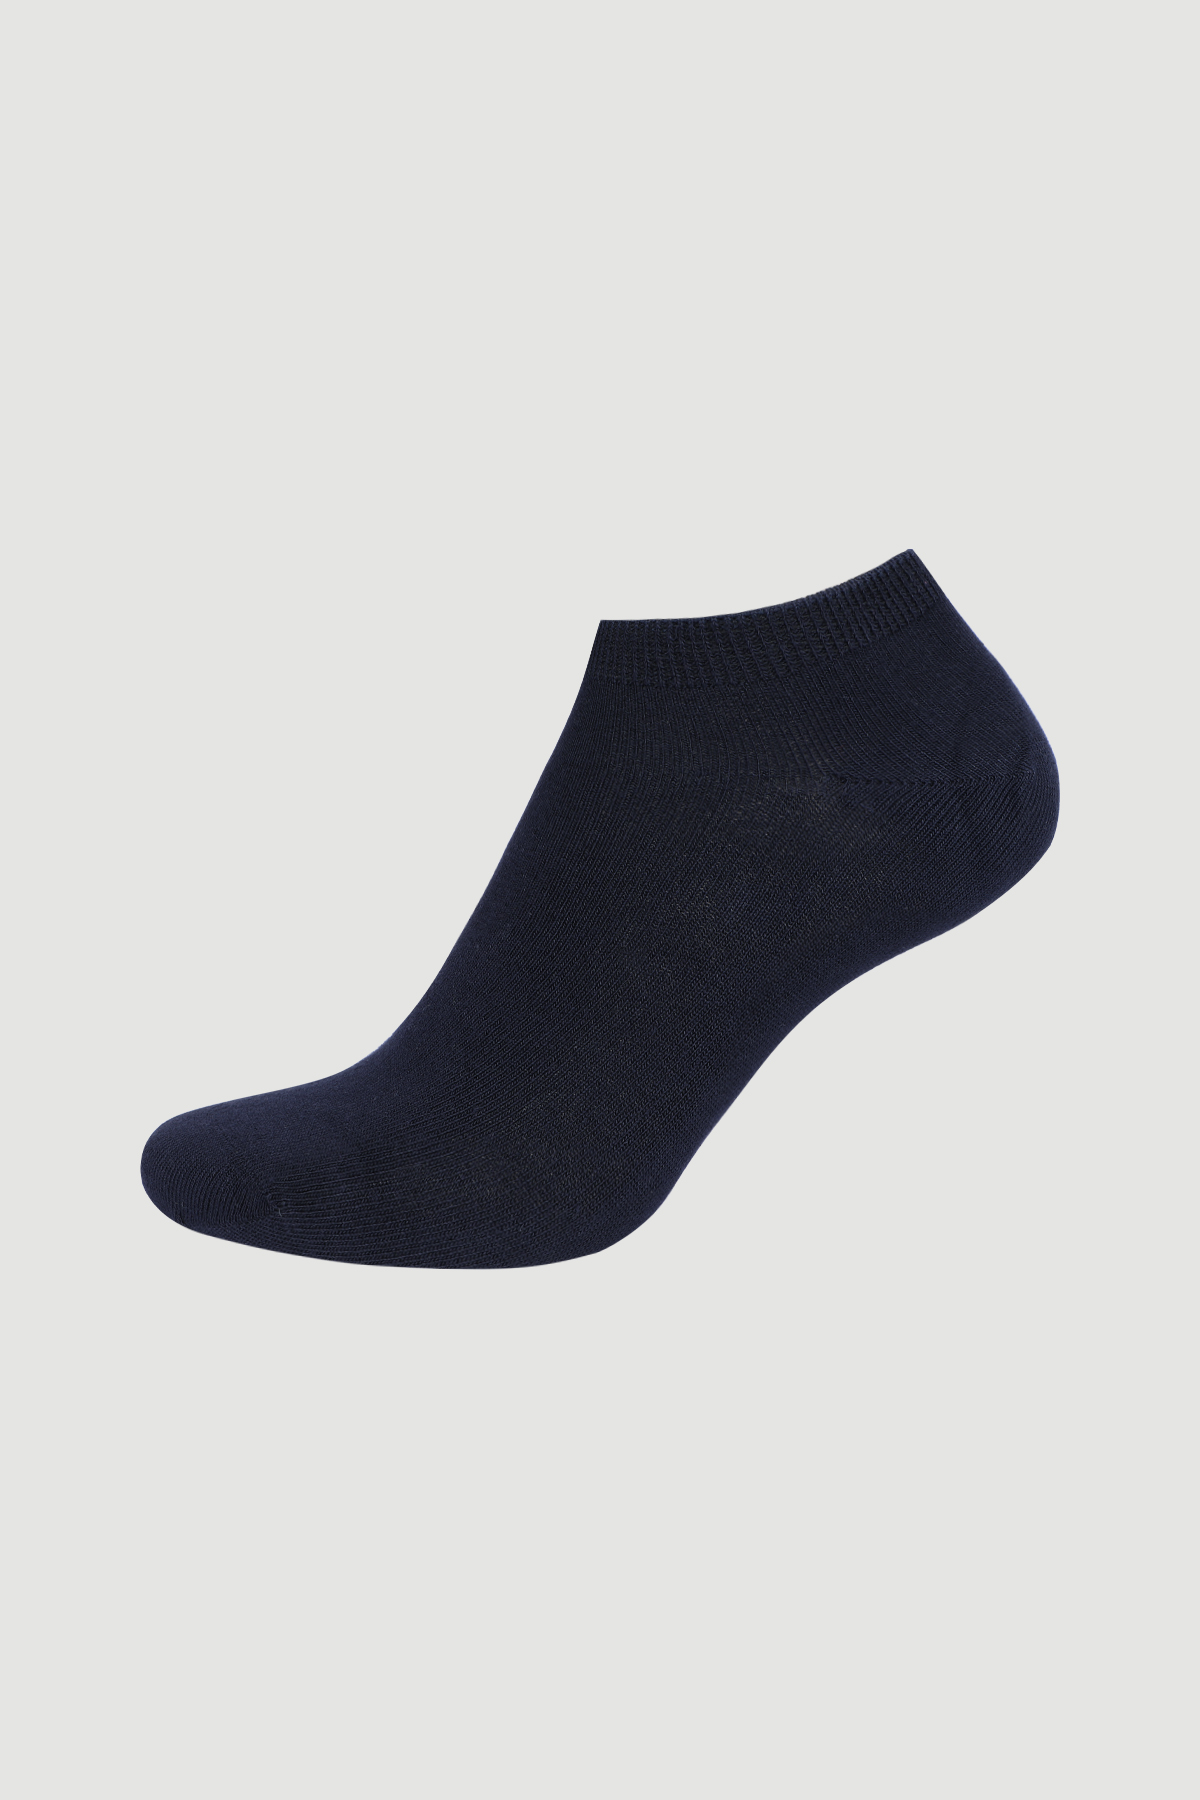 Kadın Pamuk Patik Çorap